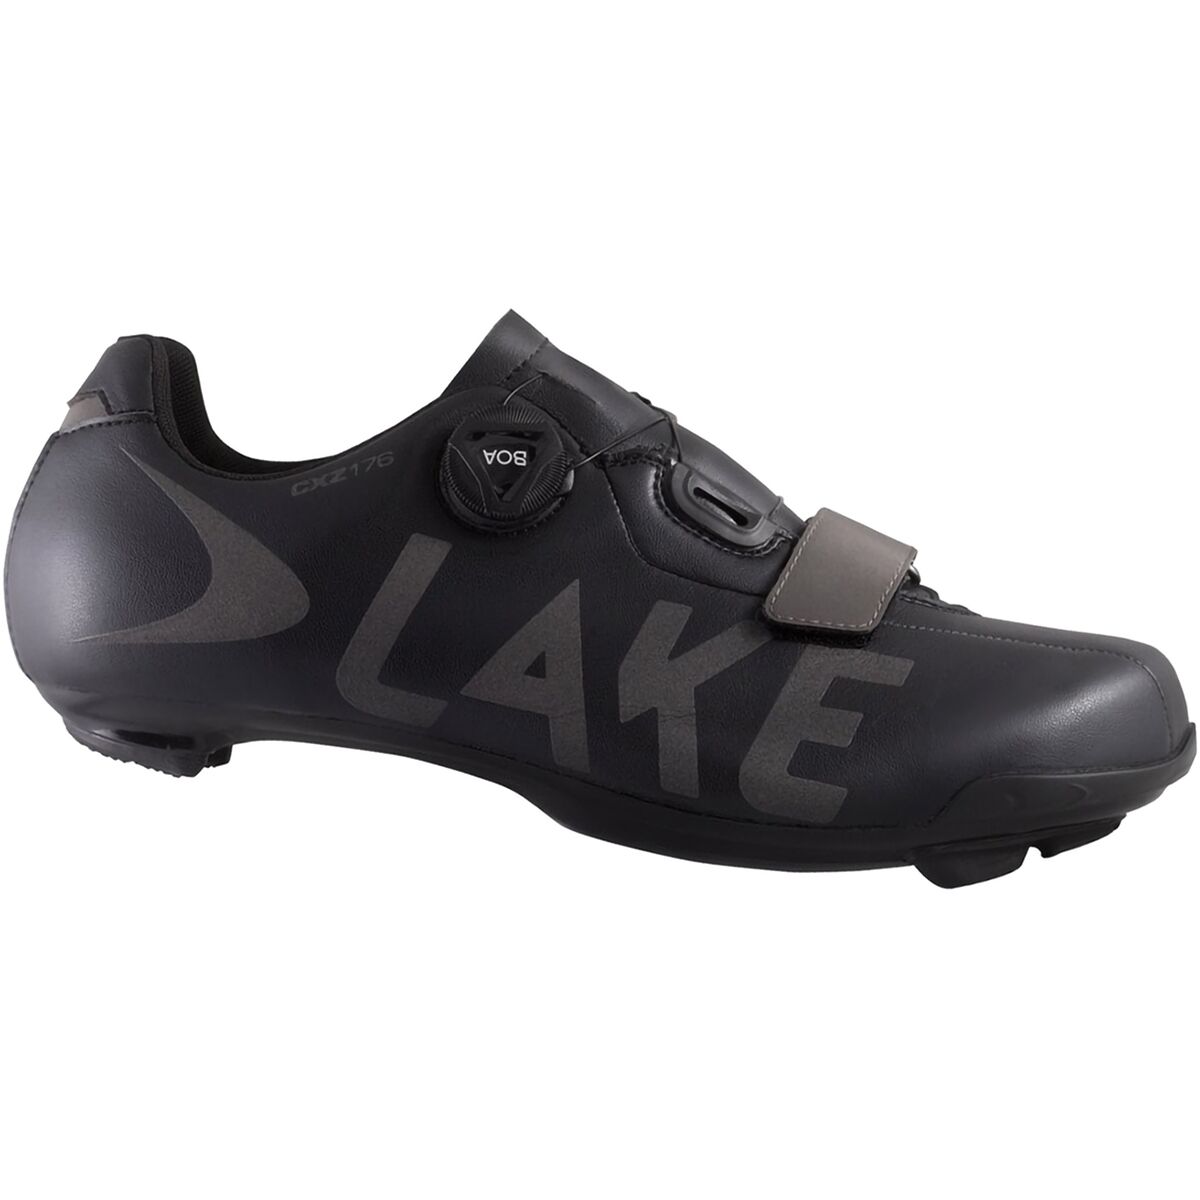 Lake CXZ176 Cycling Shoe - Men's